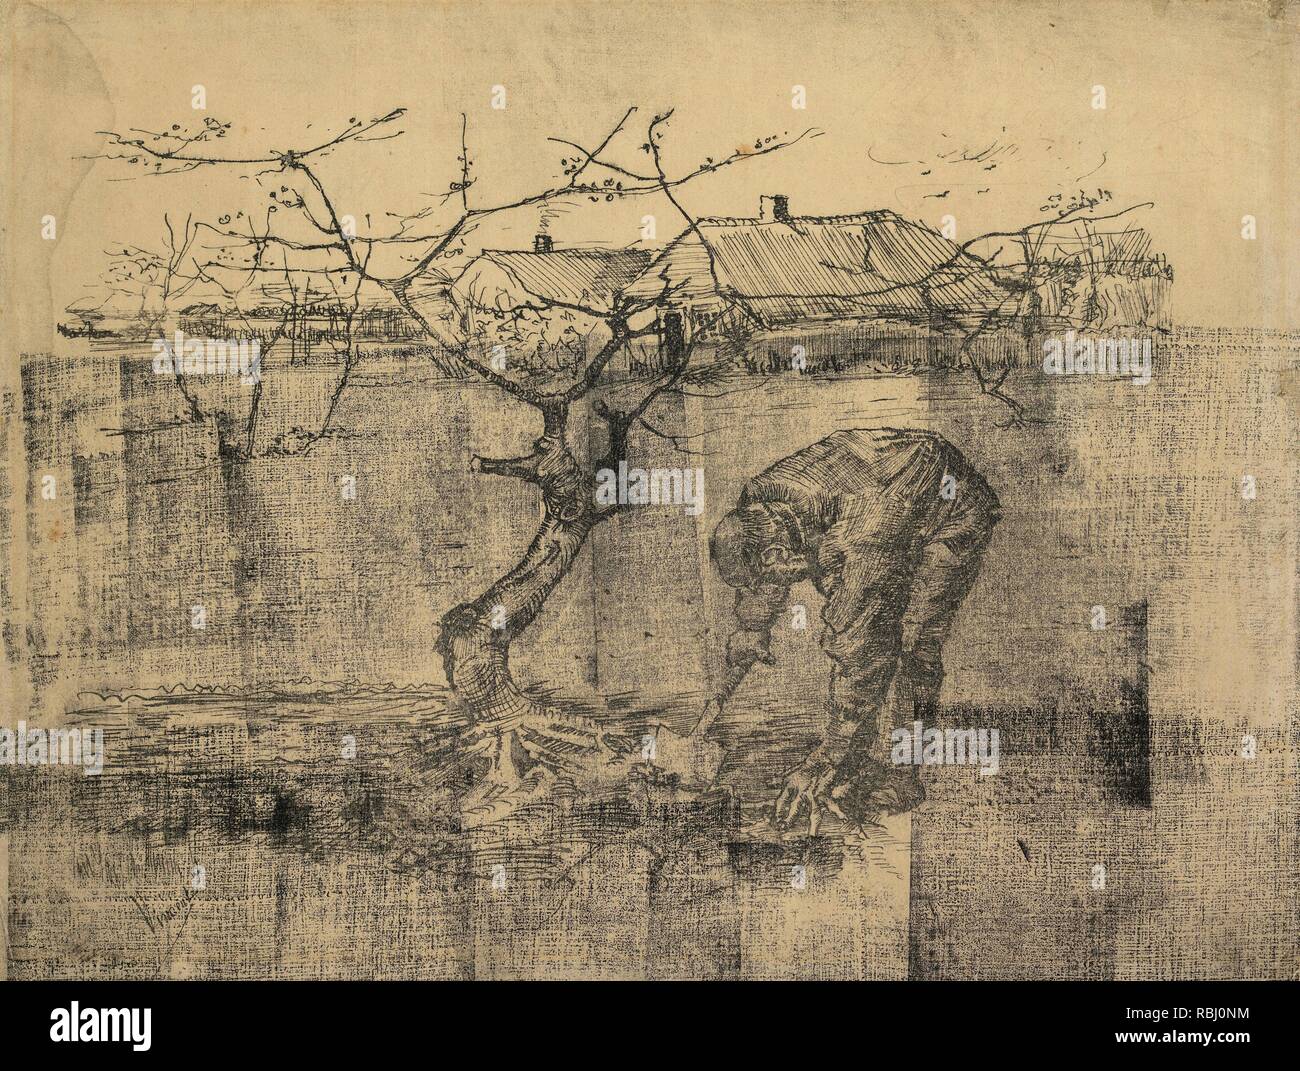 Chauffeur particulier par un pommier. Date : juillet 1883, La Haye. Dimensions : 24,7 cm x 32,6 cm. Musée : Musée Van Gogh, Amsterdam. Auteur : VAN GOGH, Vincent. VINCENT VAN GOGH. Banque D'Images